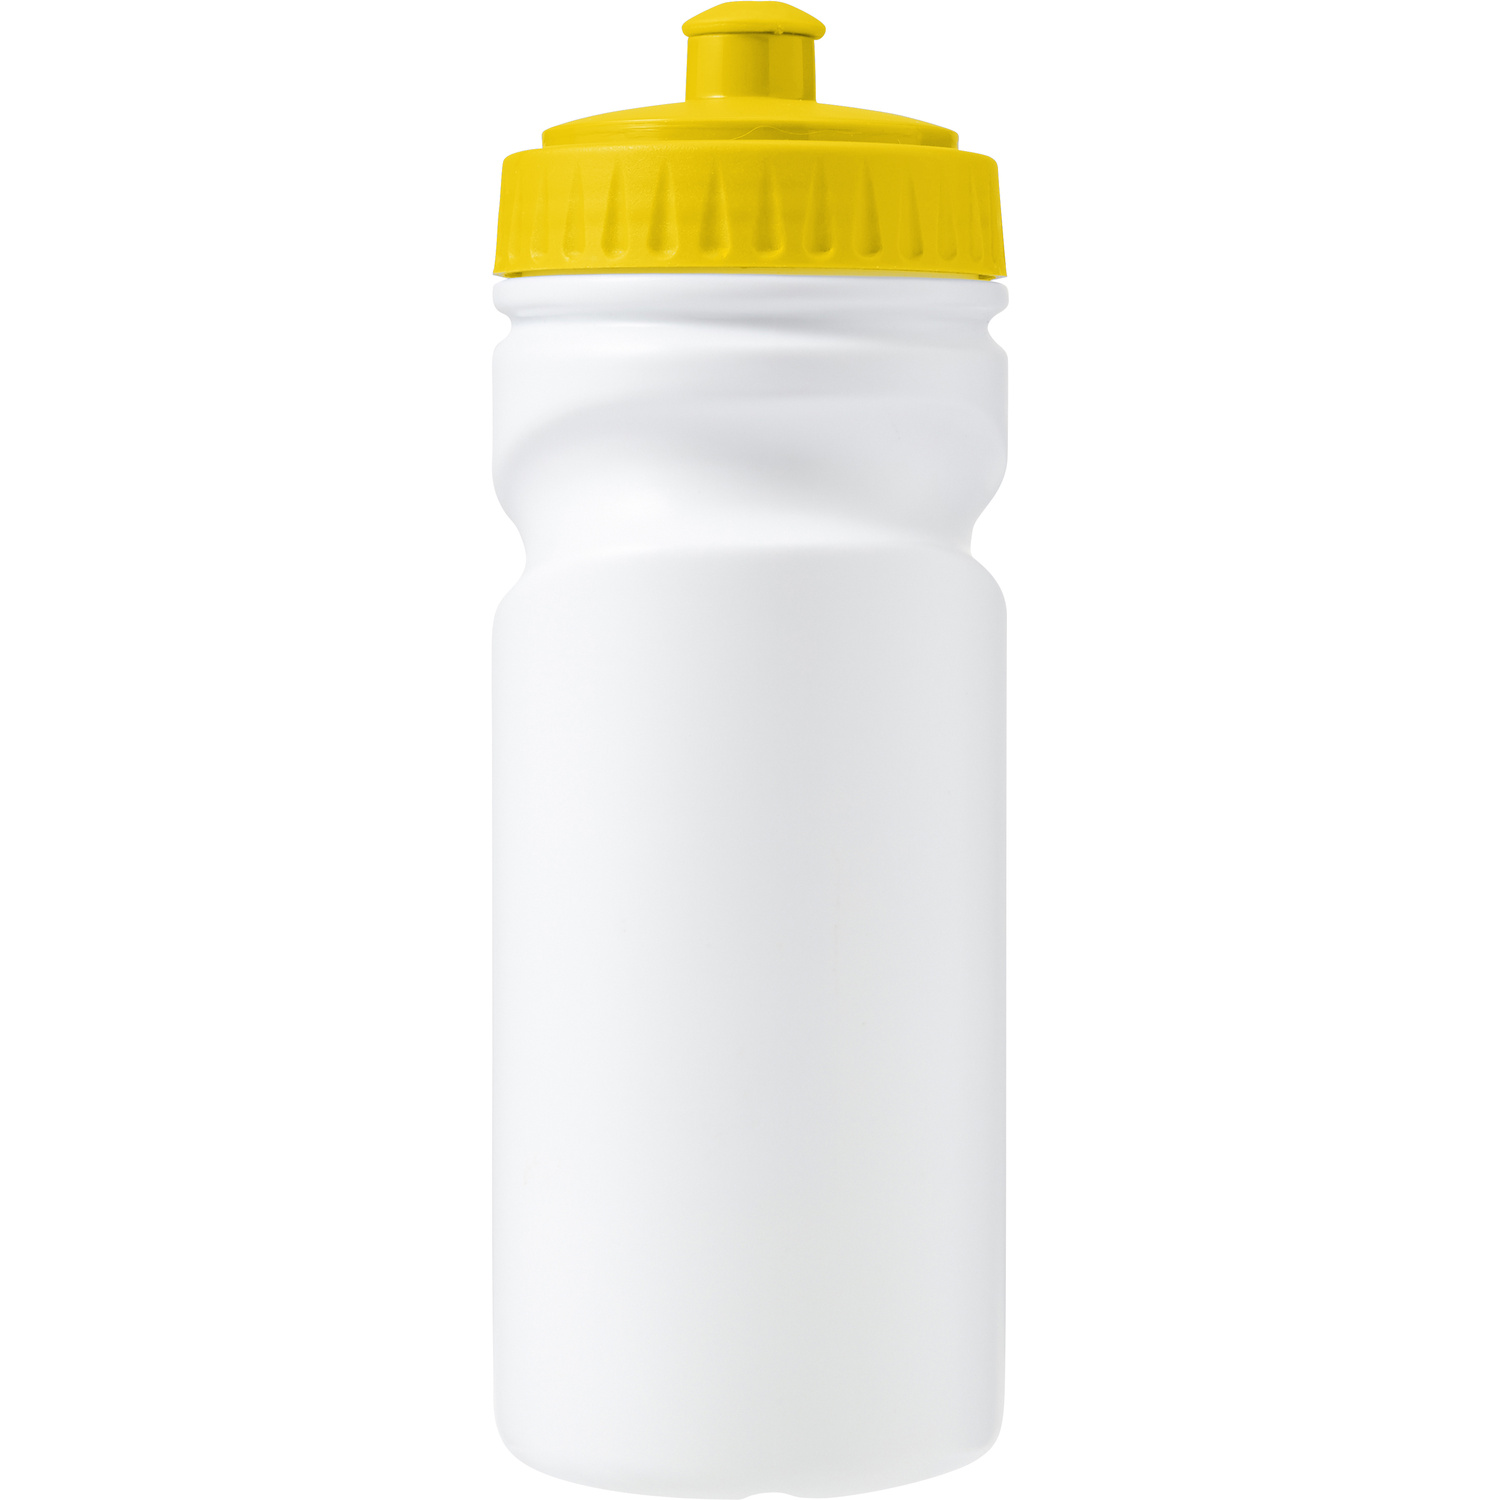 007584 006999999 2d090 frt pro01 fal - Recyclable bottle (500ml)